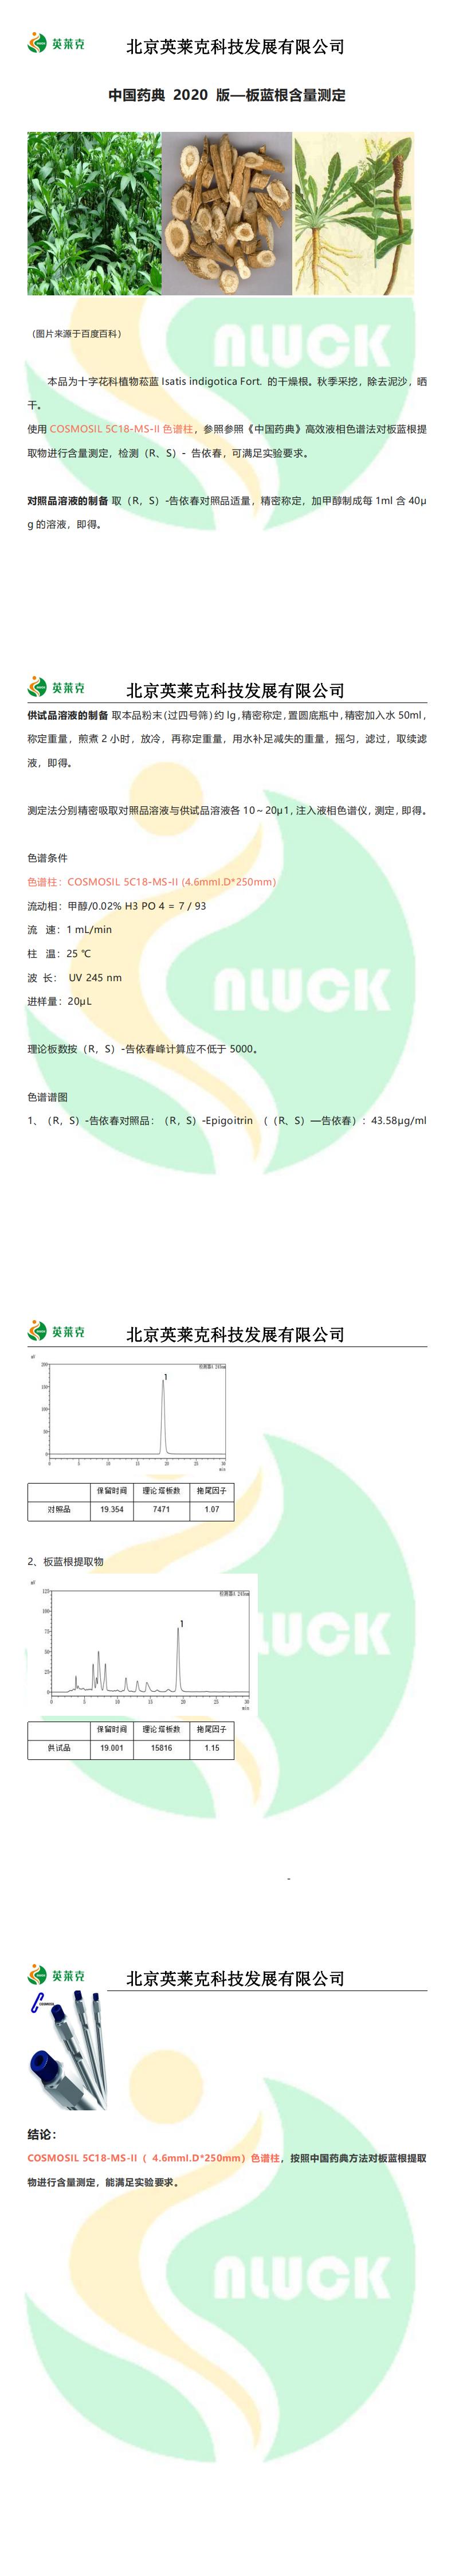 中国药典 2020 版—板蓝根含量测定_00